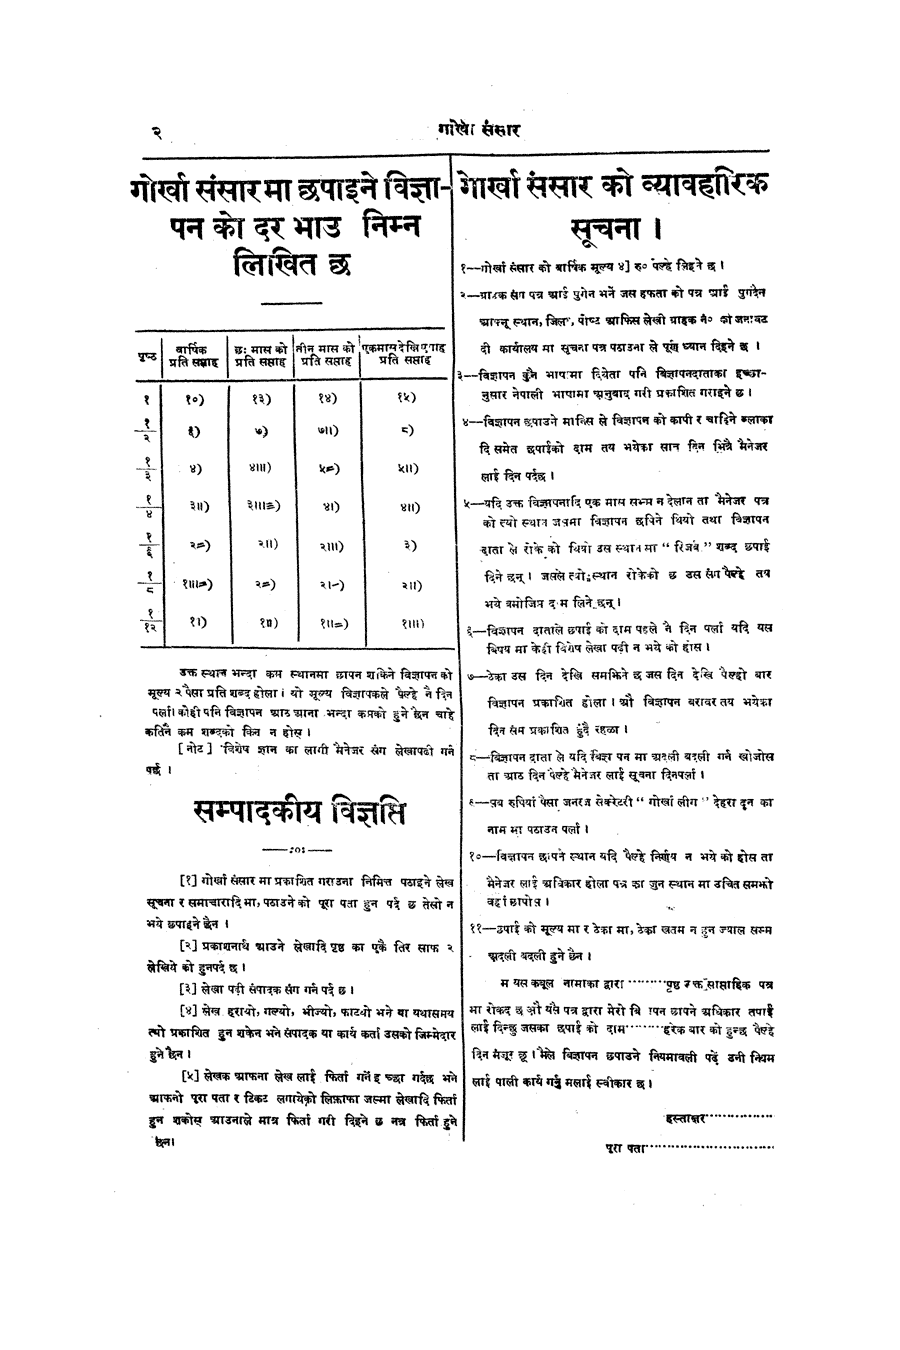 Gorkha Sansar, 16 Nov 1926, page 2